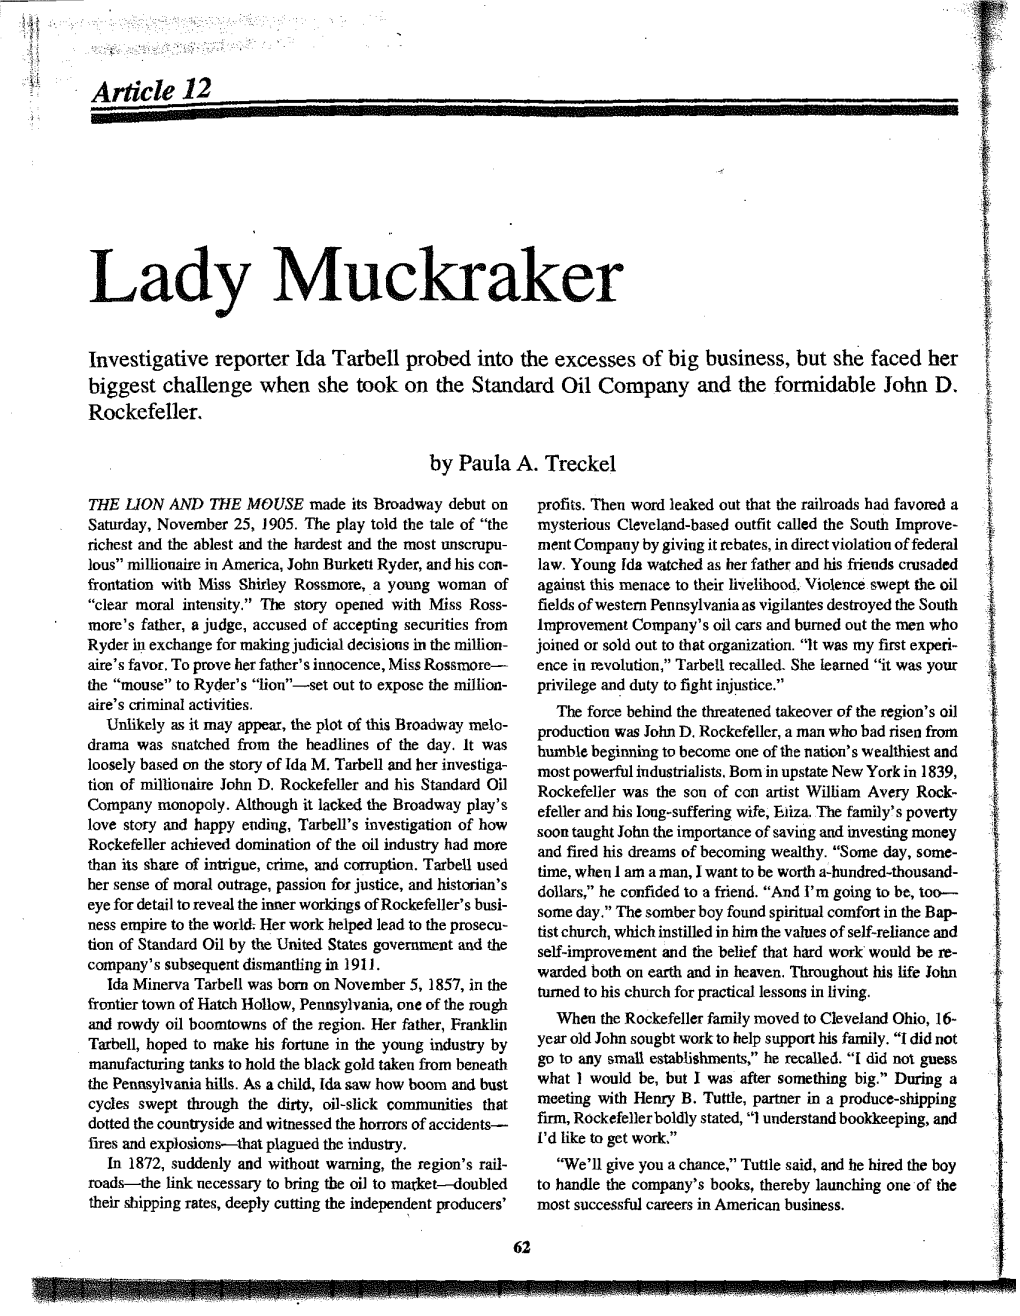 Lady Muckraker